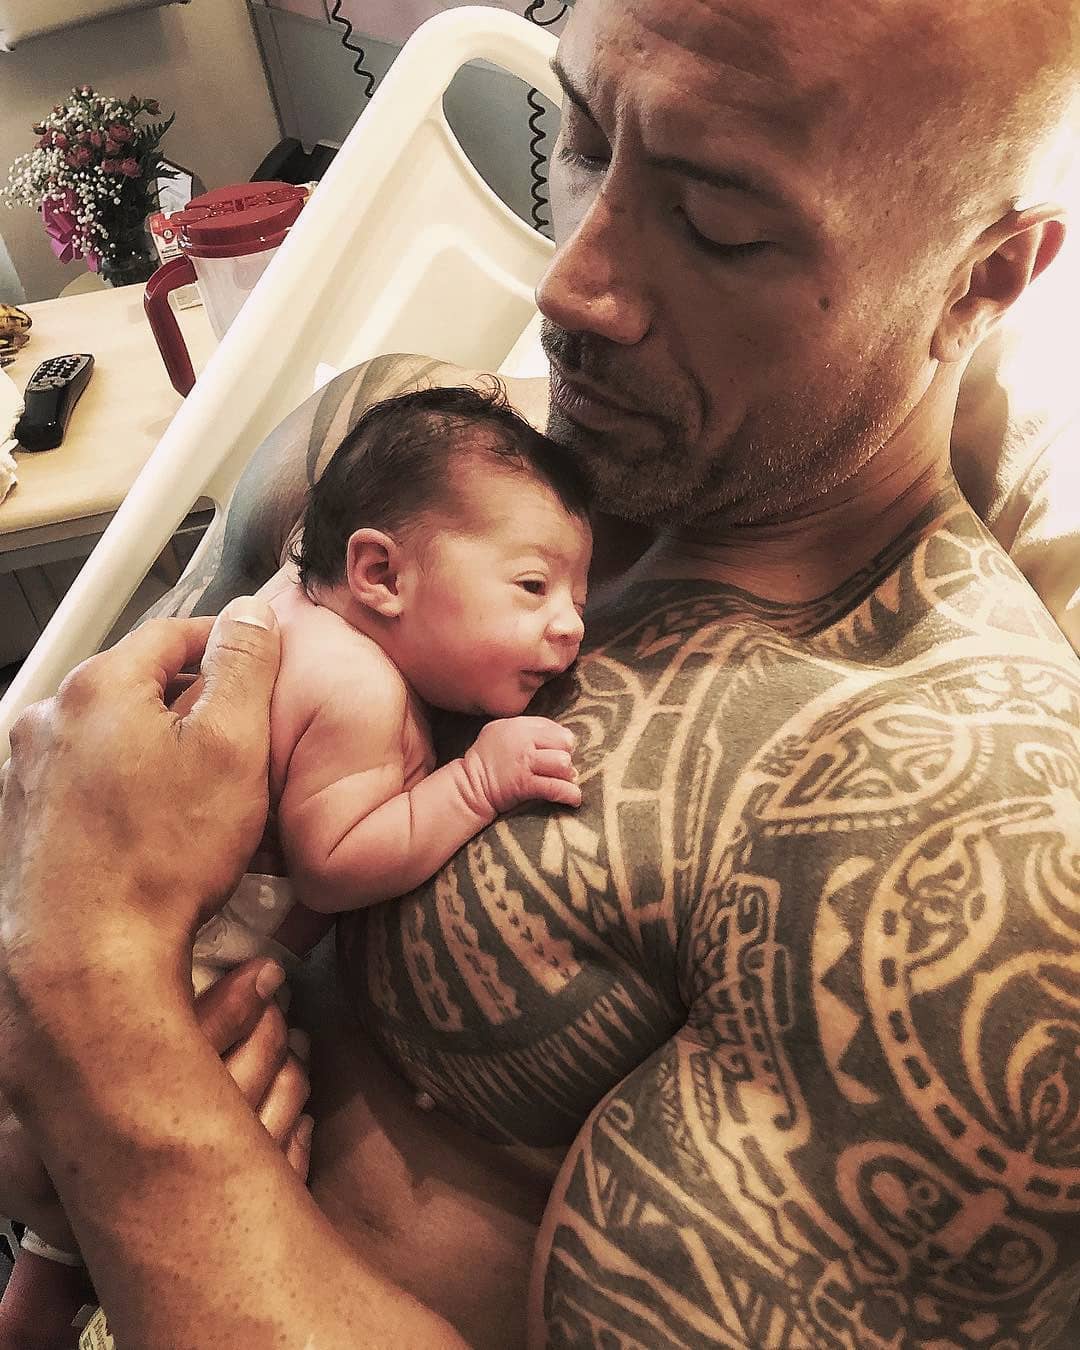 Dwayne Johnson, mais conhecido como The Rock, anunciou o nascimento da sua terceira filha, Tiana Gia Johnson, em abril. | Foto via Instagram @dwayne.johnsonrock